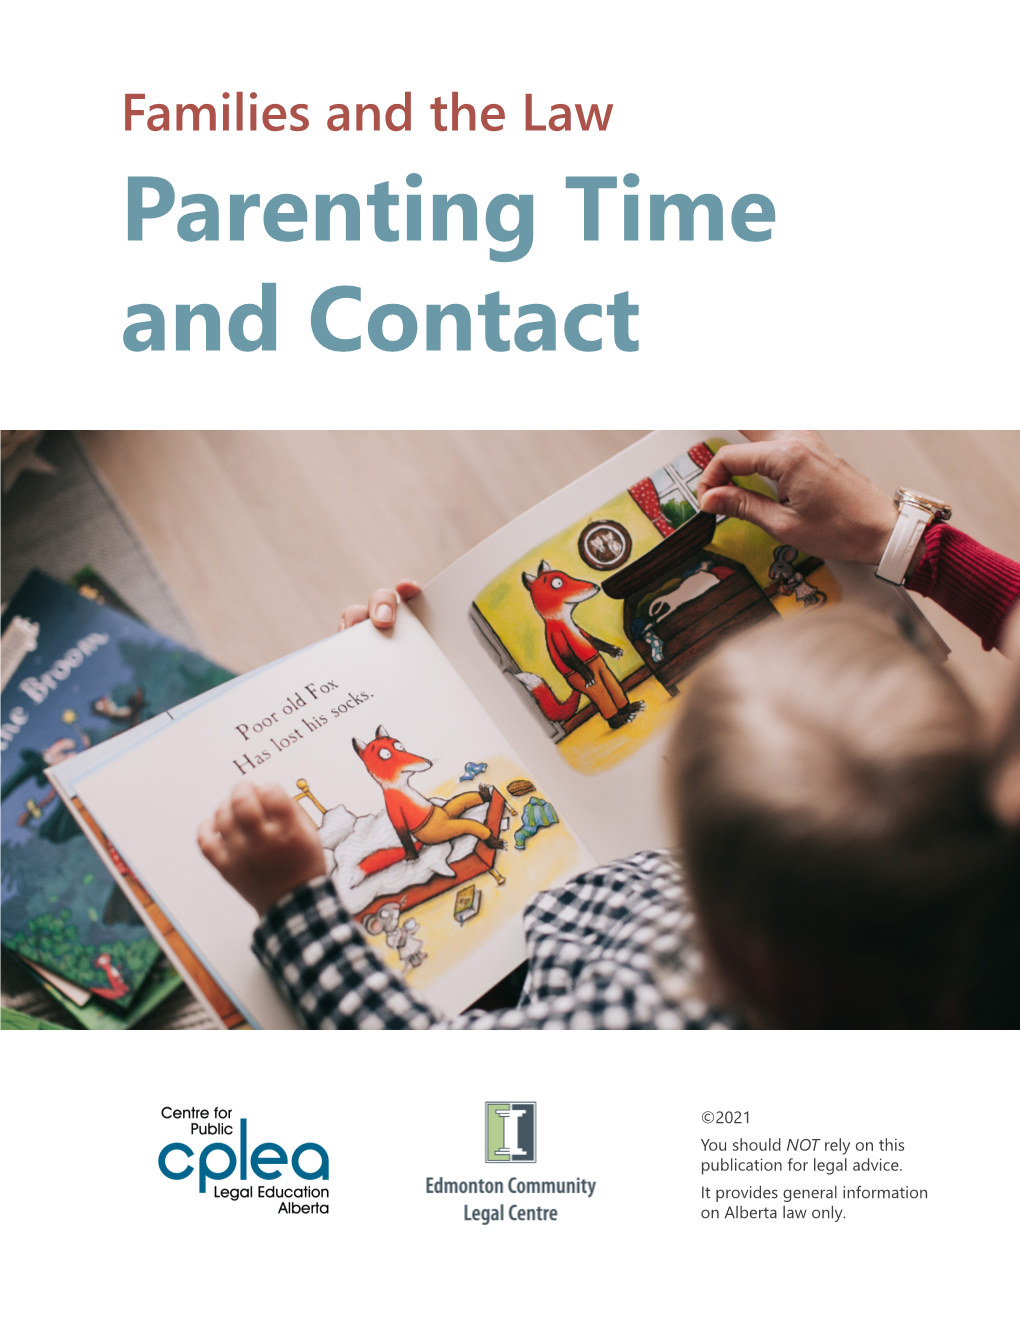 Child Custody & Parenting